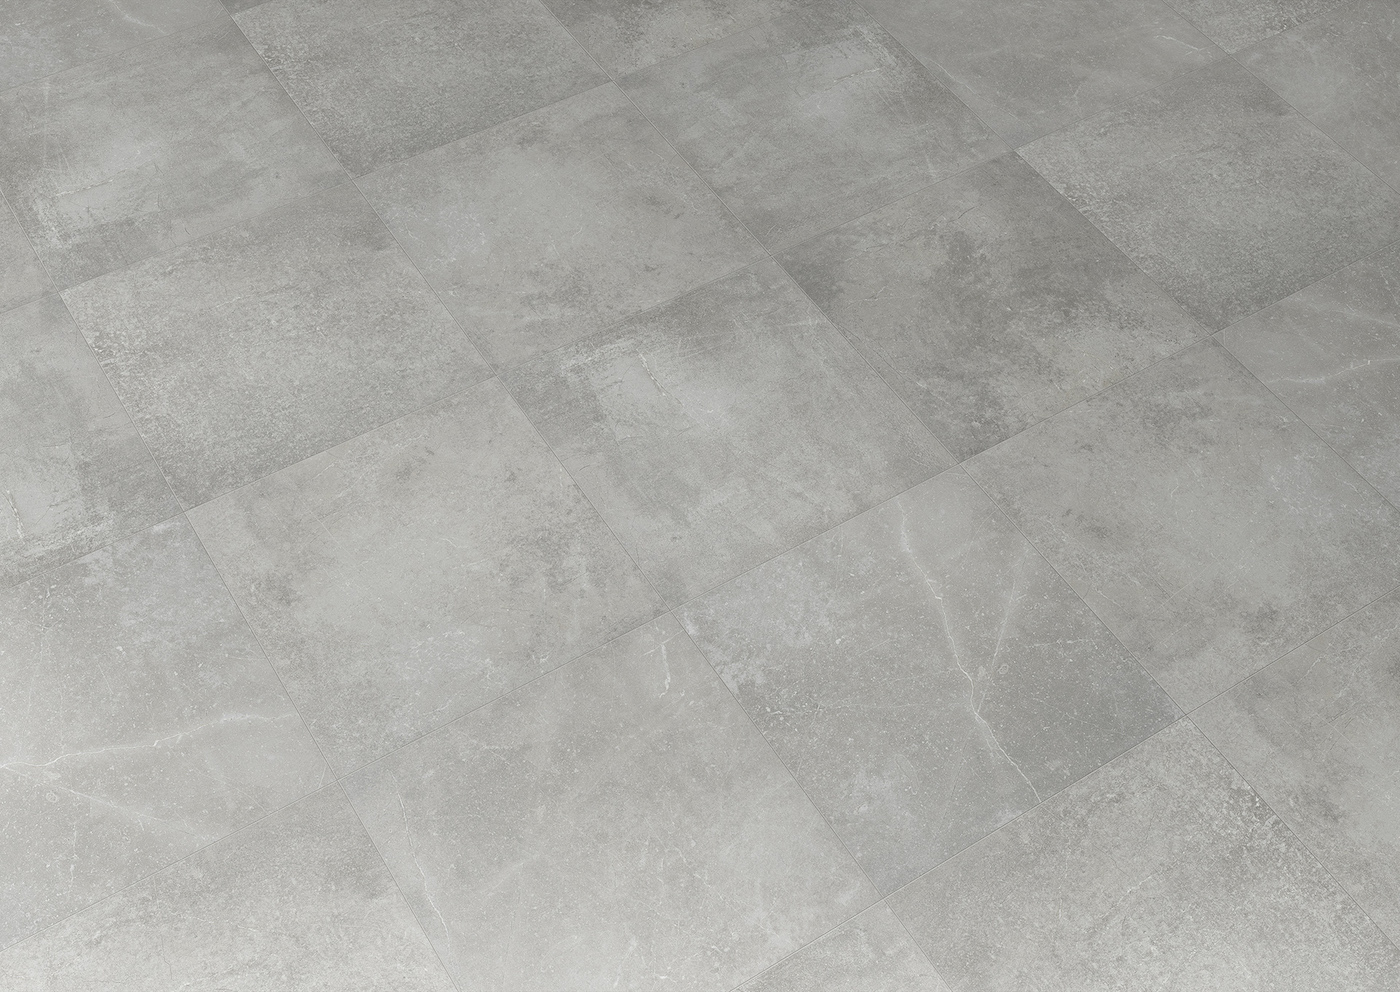 Klif grey 60x60 flooring